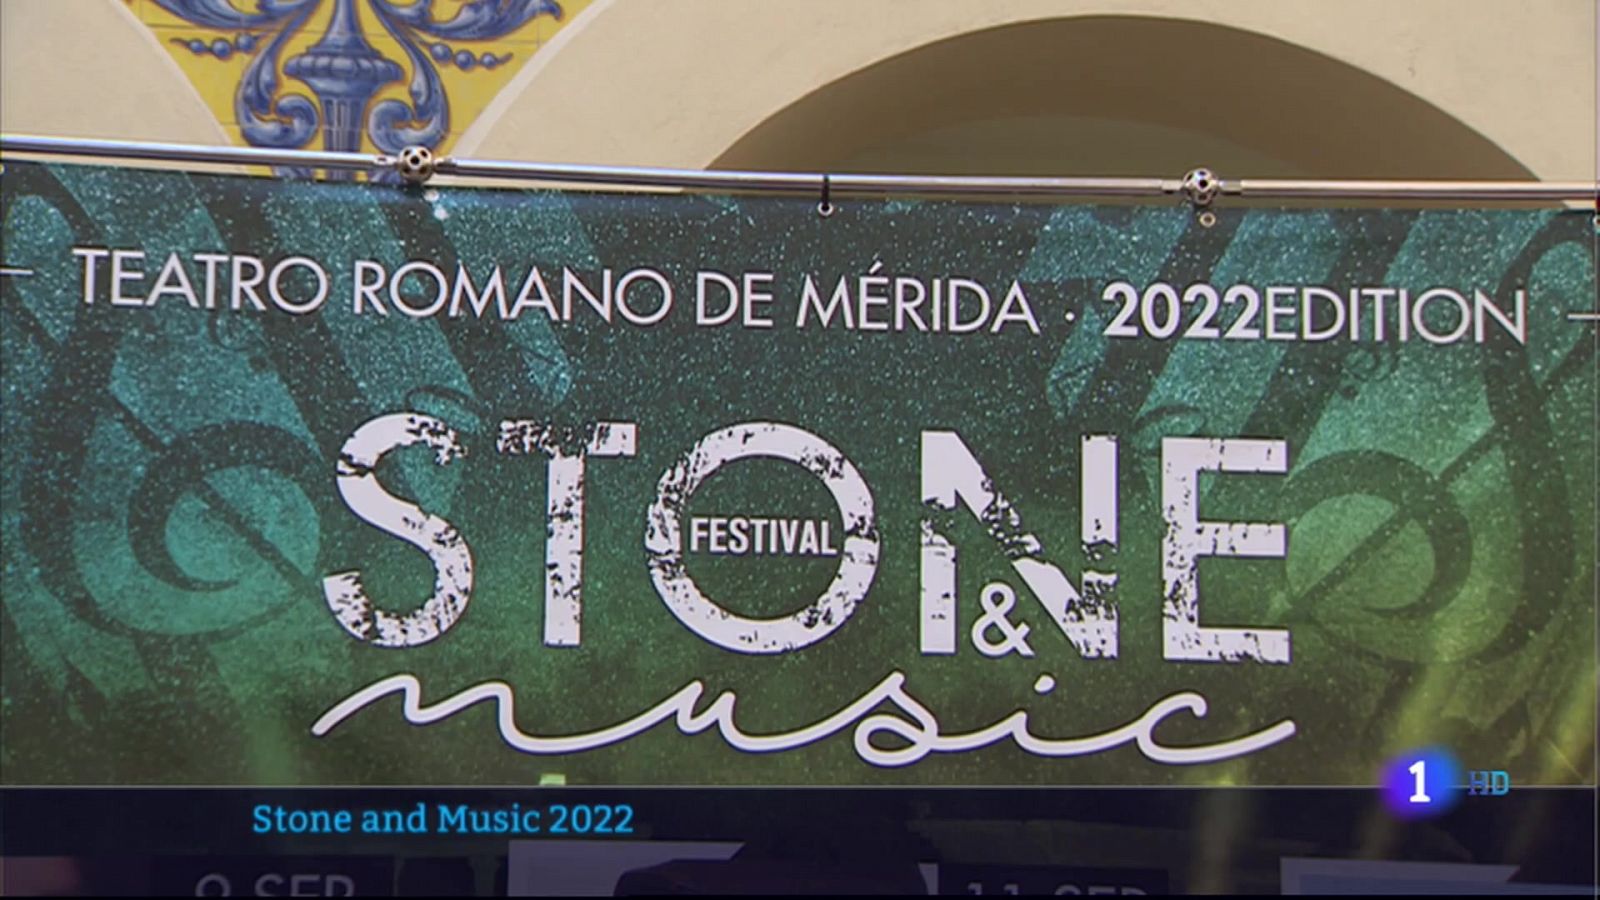 Primeros nombres del Stone and Music 2022